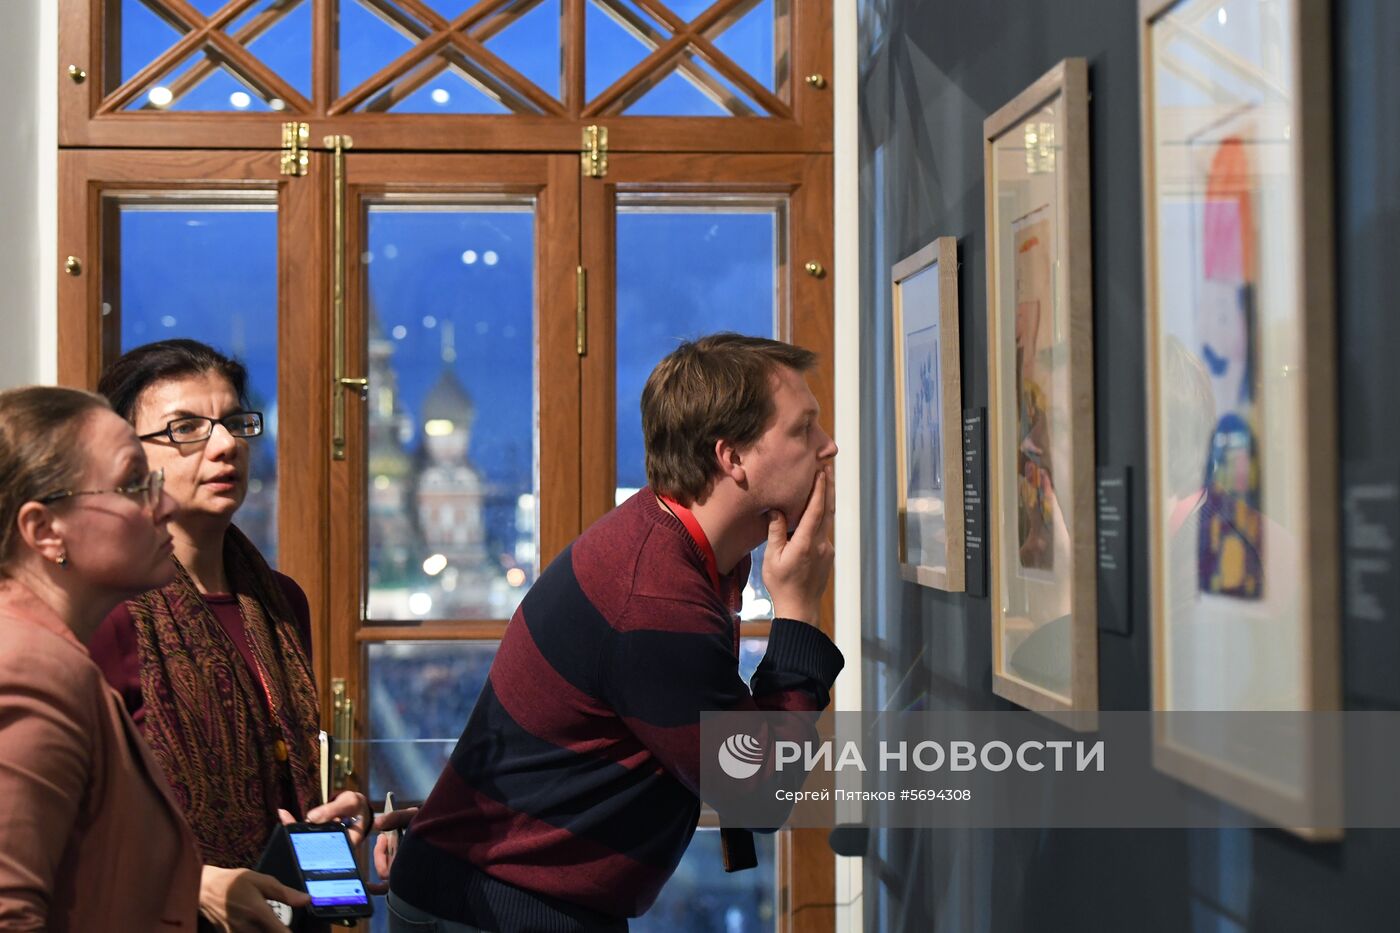 Выставка "Николай II. Семья и престол" в Государственном историческом музее